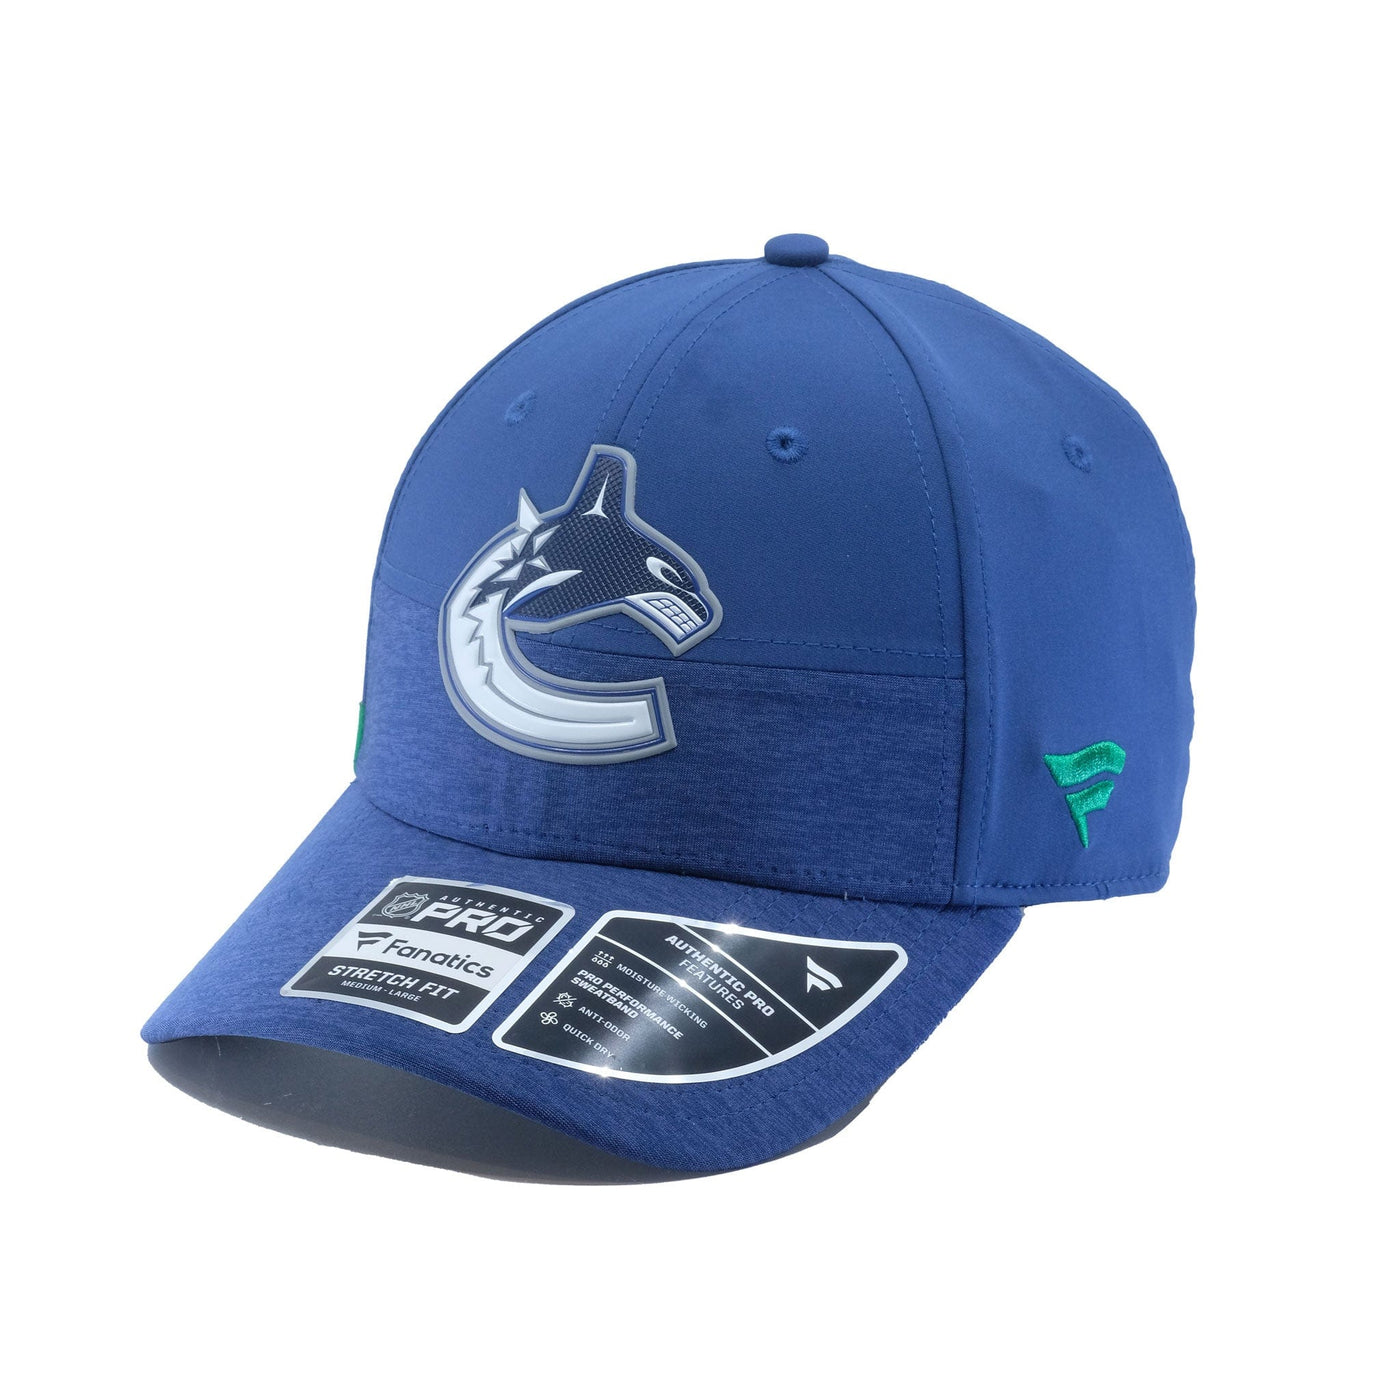 Fanatics NHL Authentic Pro Flexfit Hat